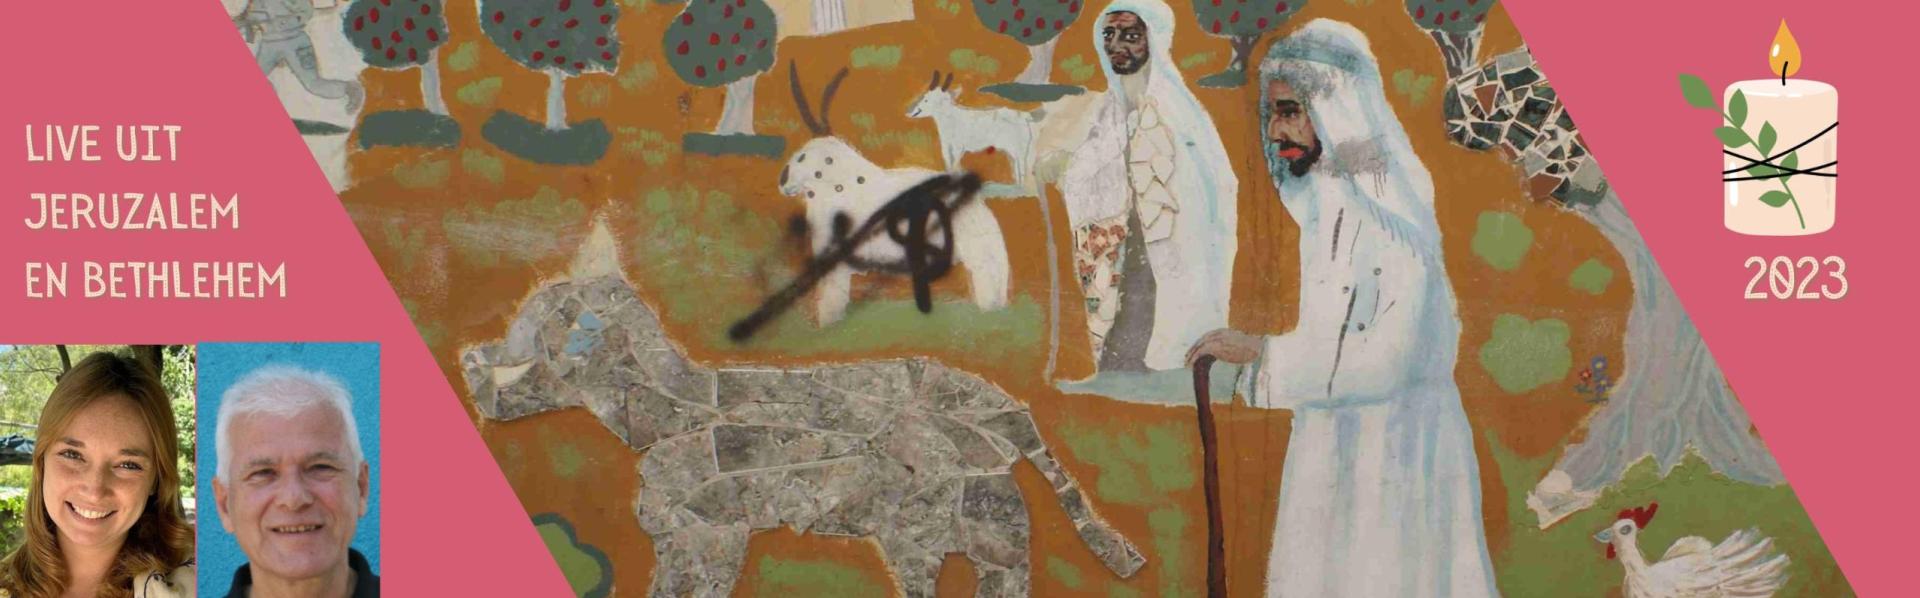 muurschildering palestina herders en te wapen